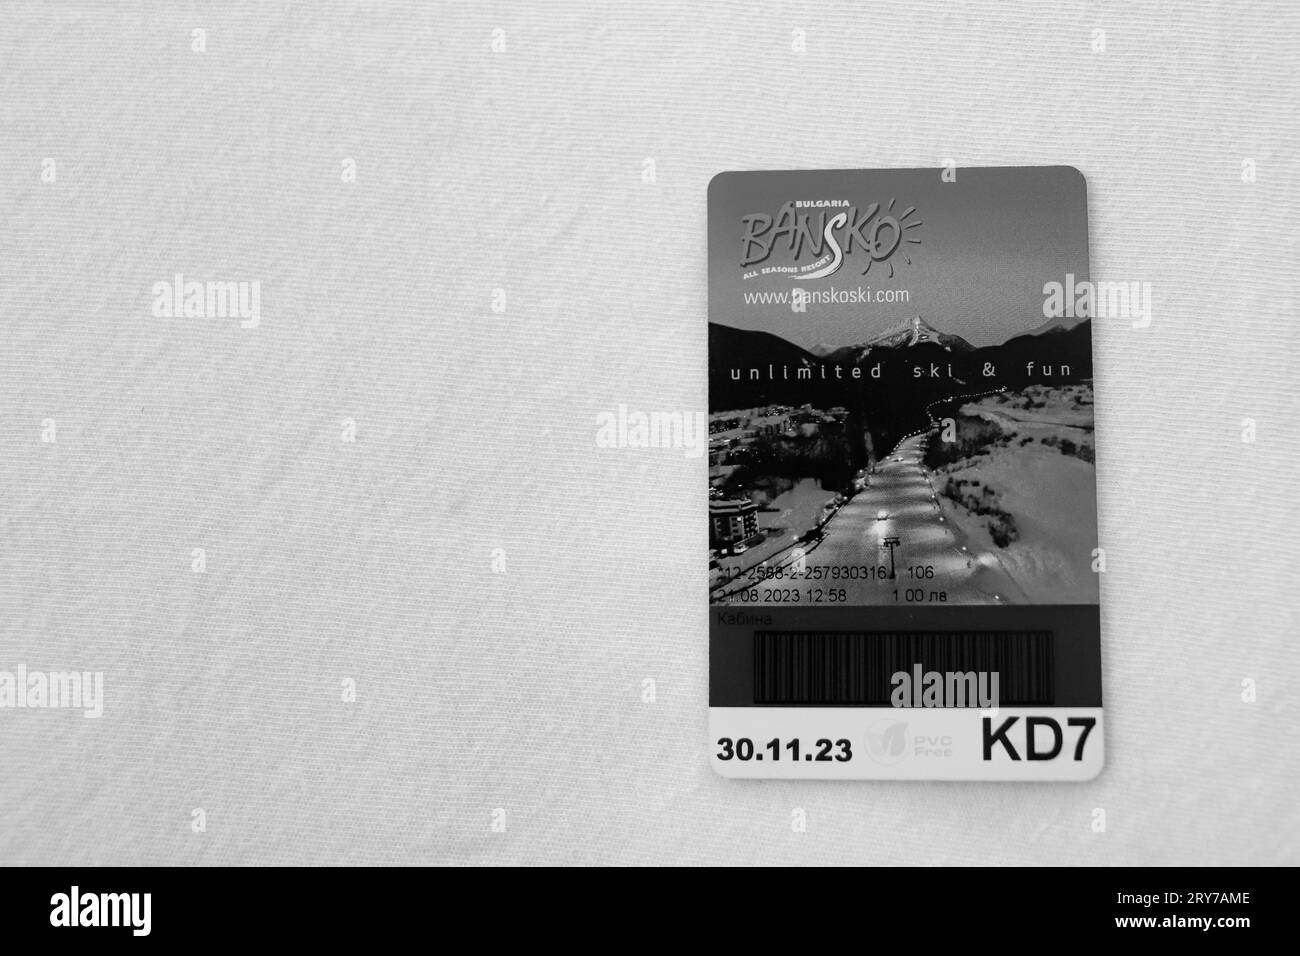 Bianco e nero, Bansko Ski, biglietto d'ingresso per la funivia su sfondo bianco Foto Stock